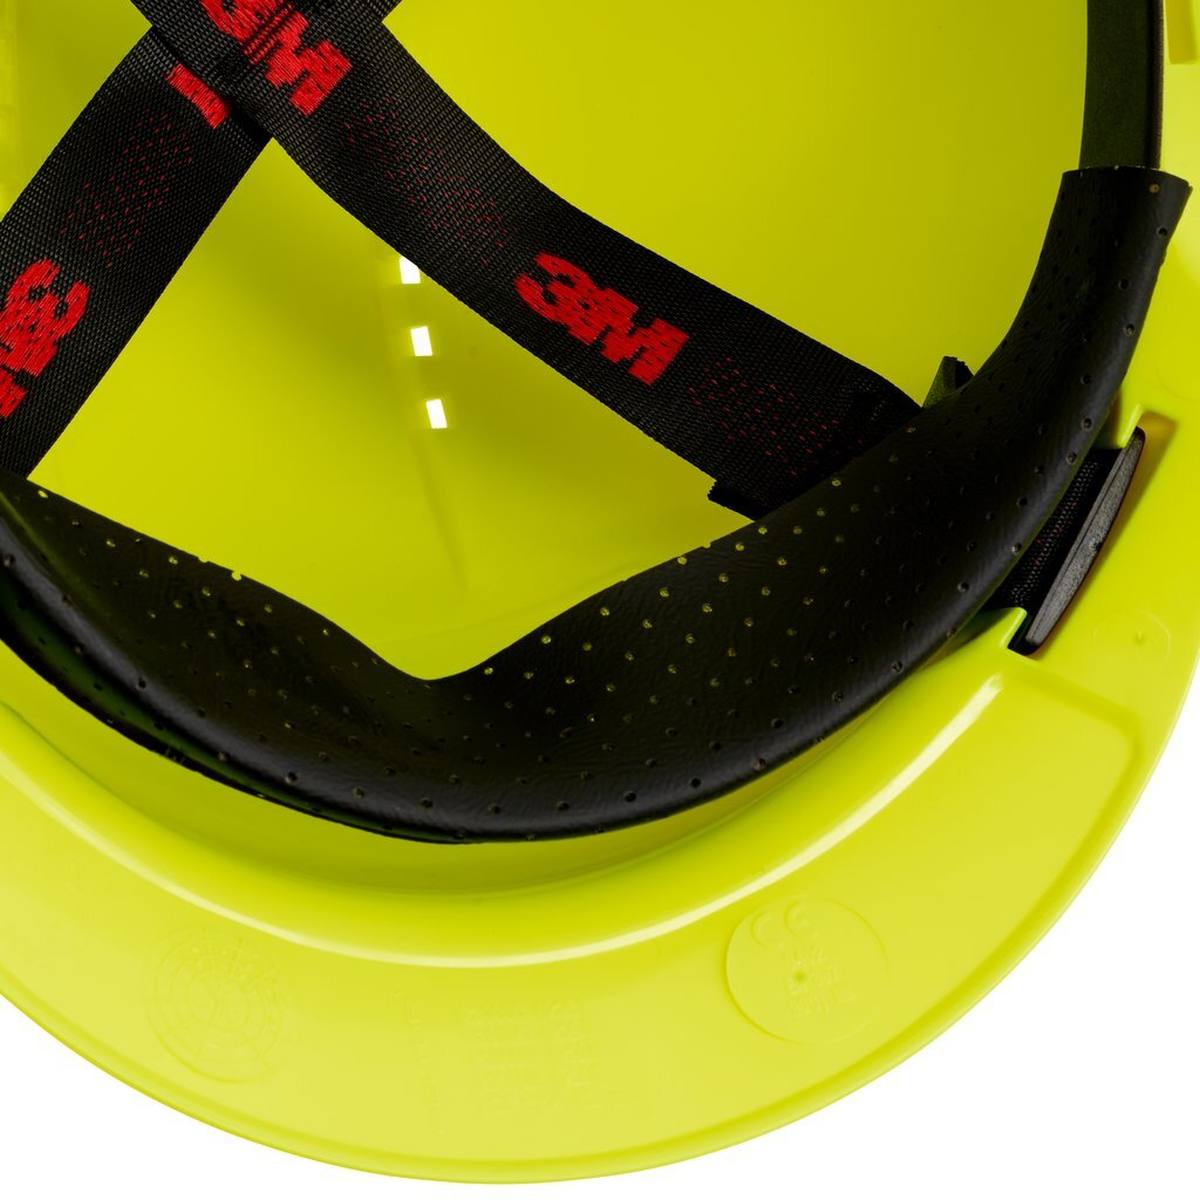 3M G3000 casque de protection G30CUV en vert fluo, ventilé, avec uvicator, pinlock et bande de soudure en plastique